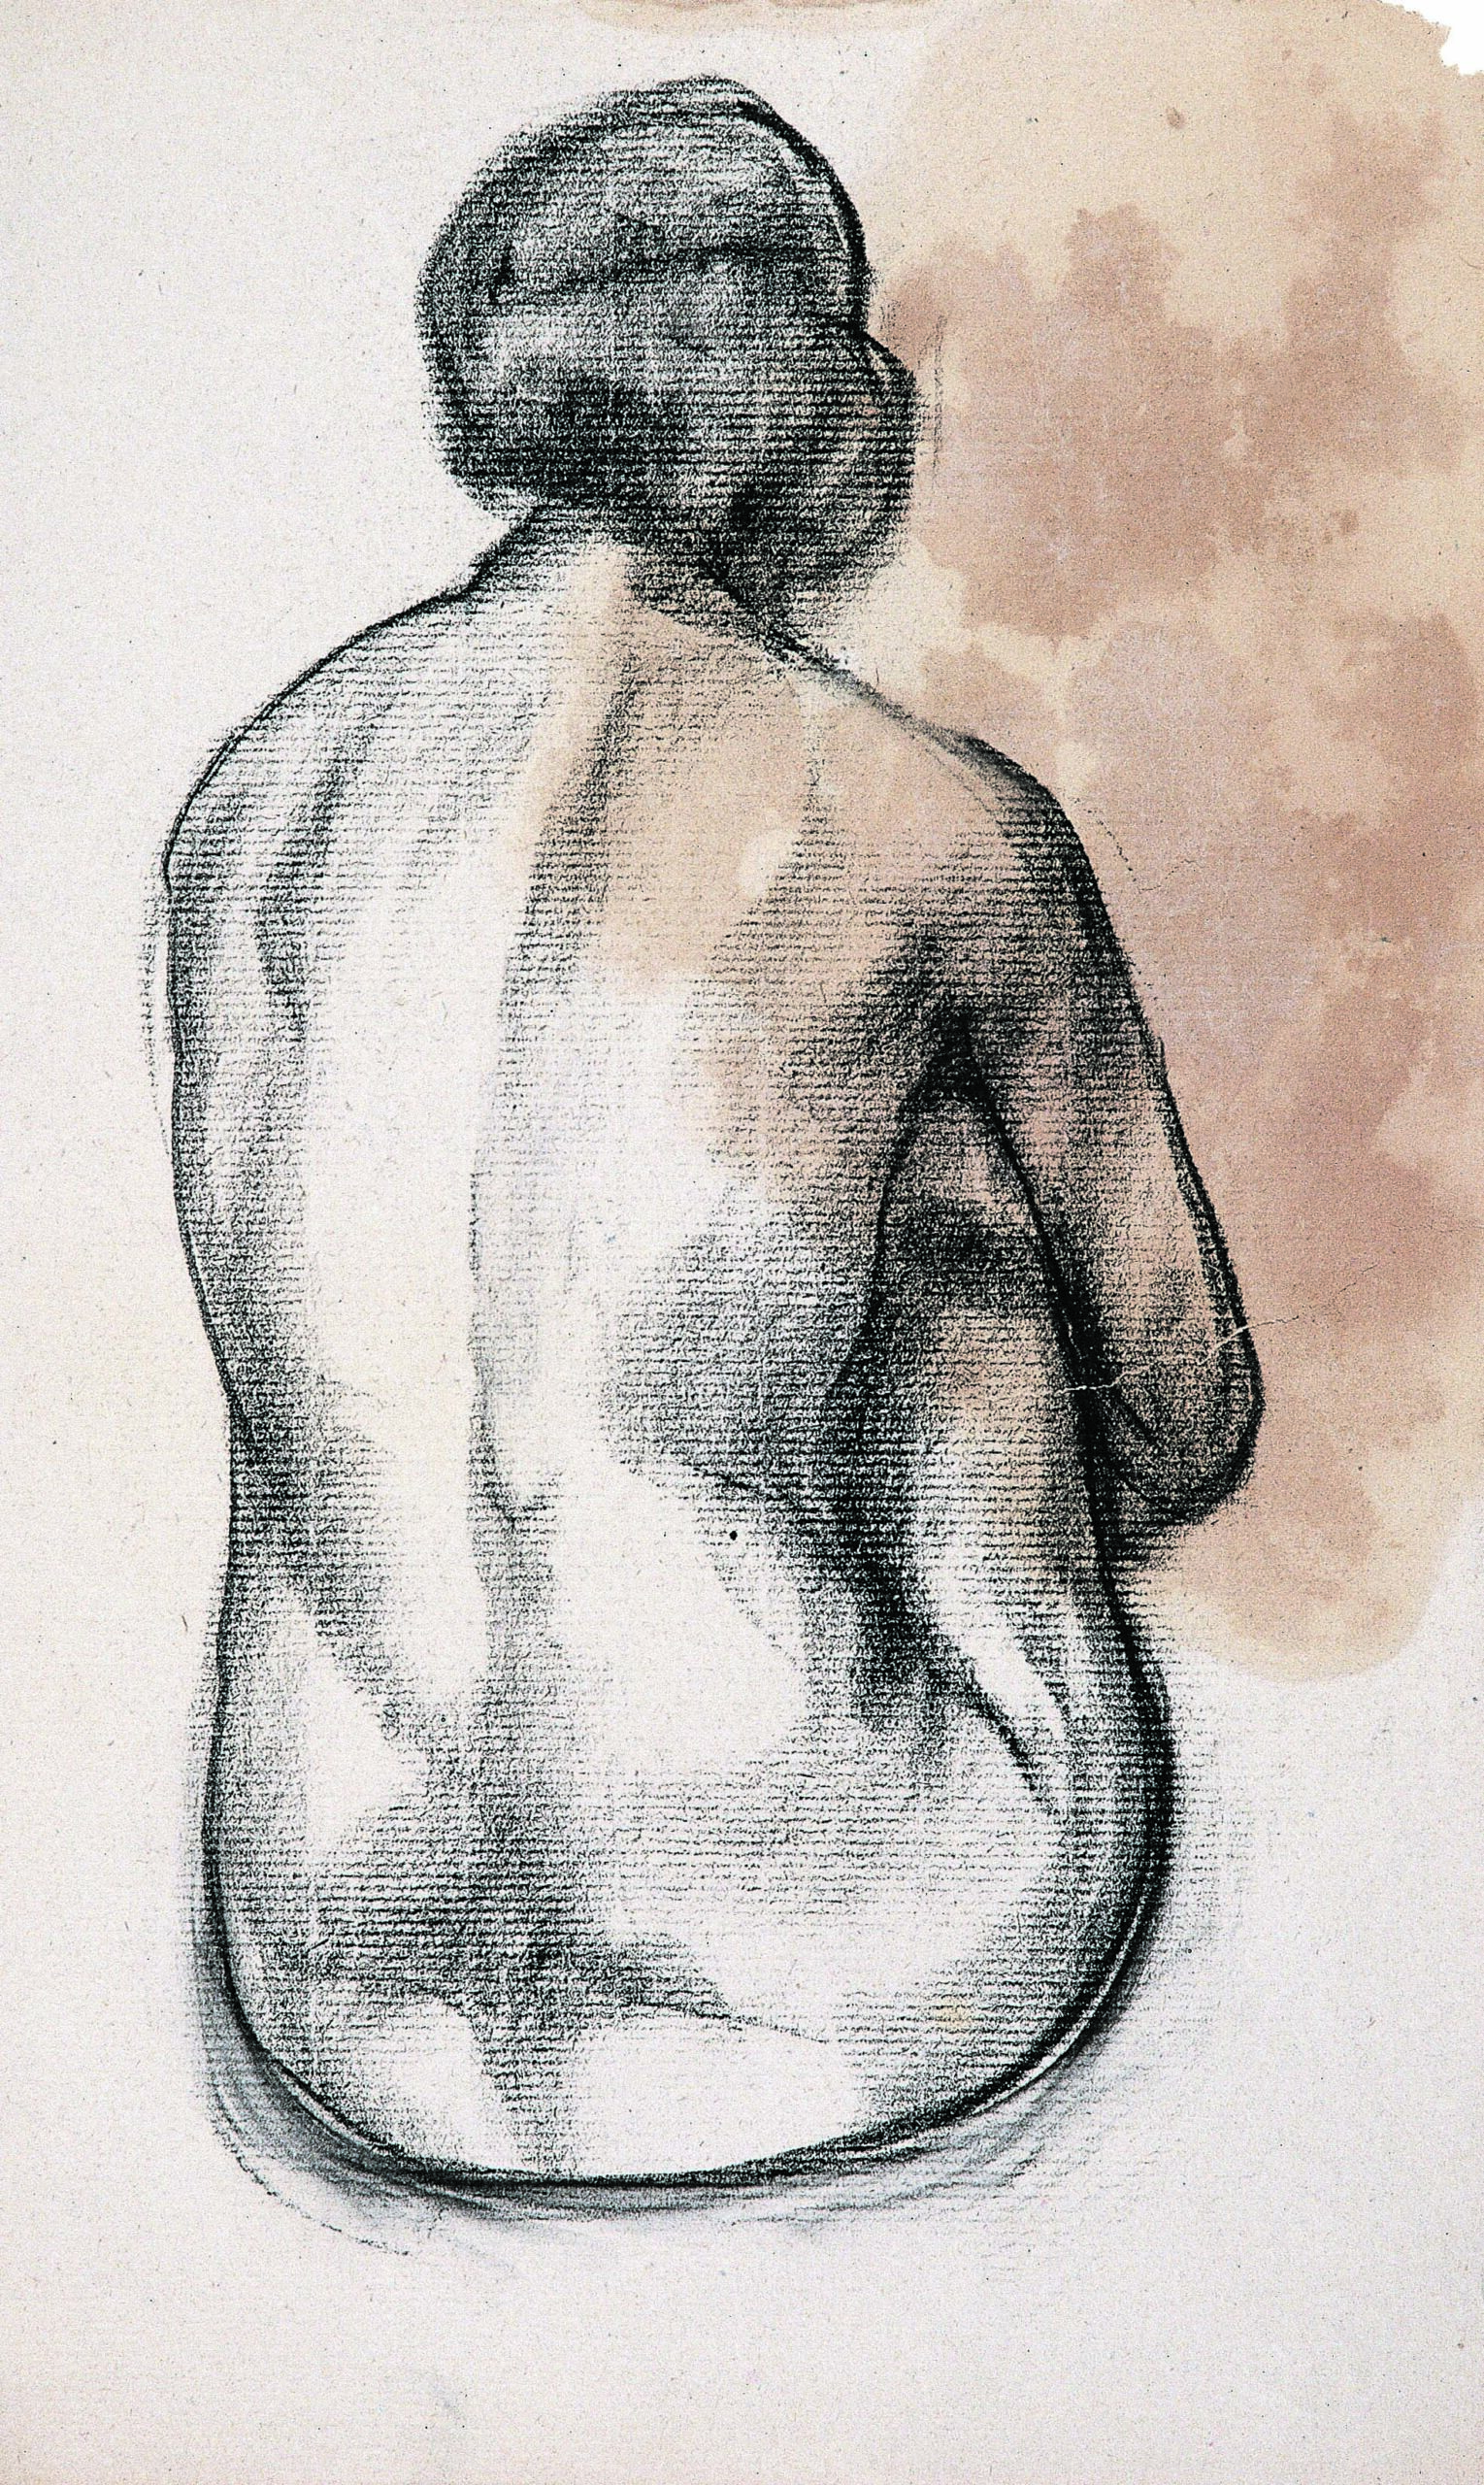 Dibjujo de José Manaut titulado Desnudo de espaldas. Realizado en la Academia Colarossi de París, 1924.